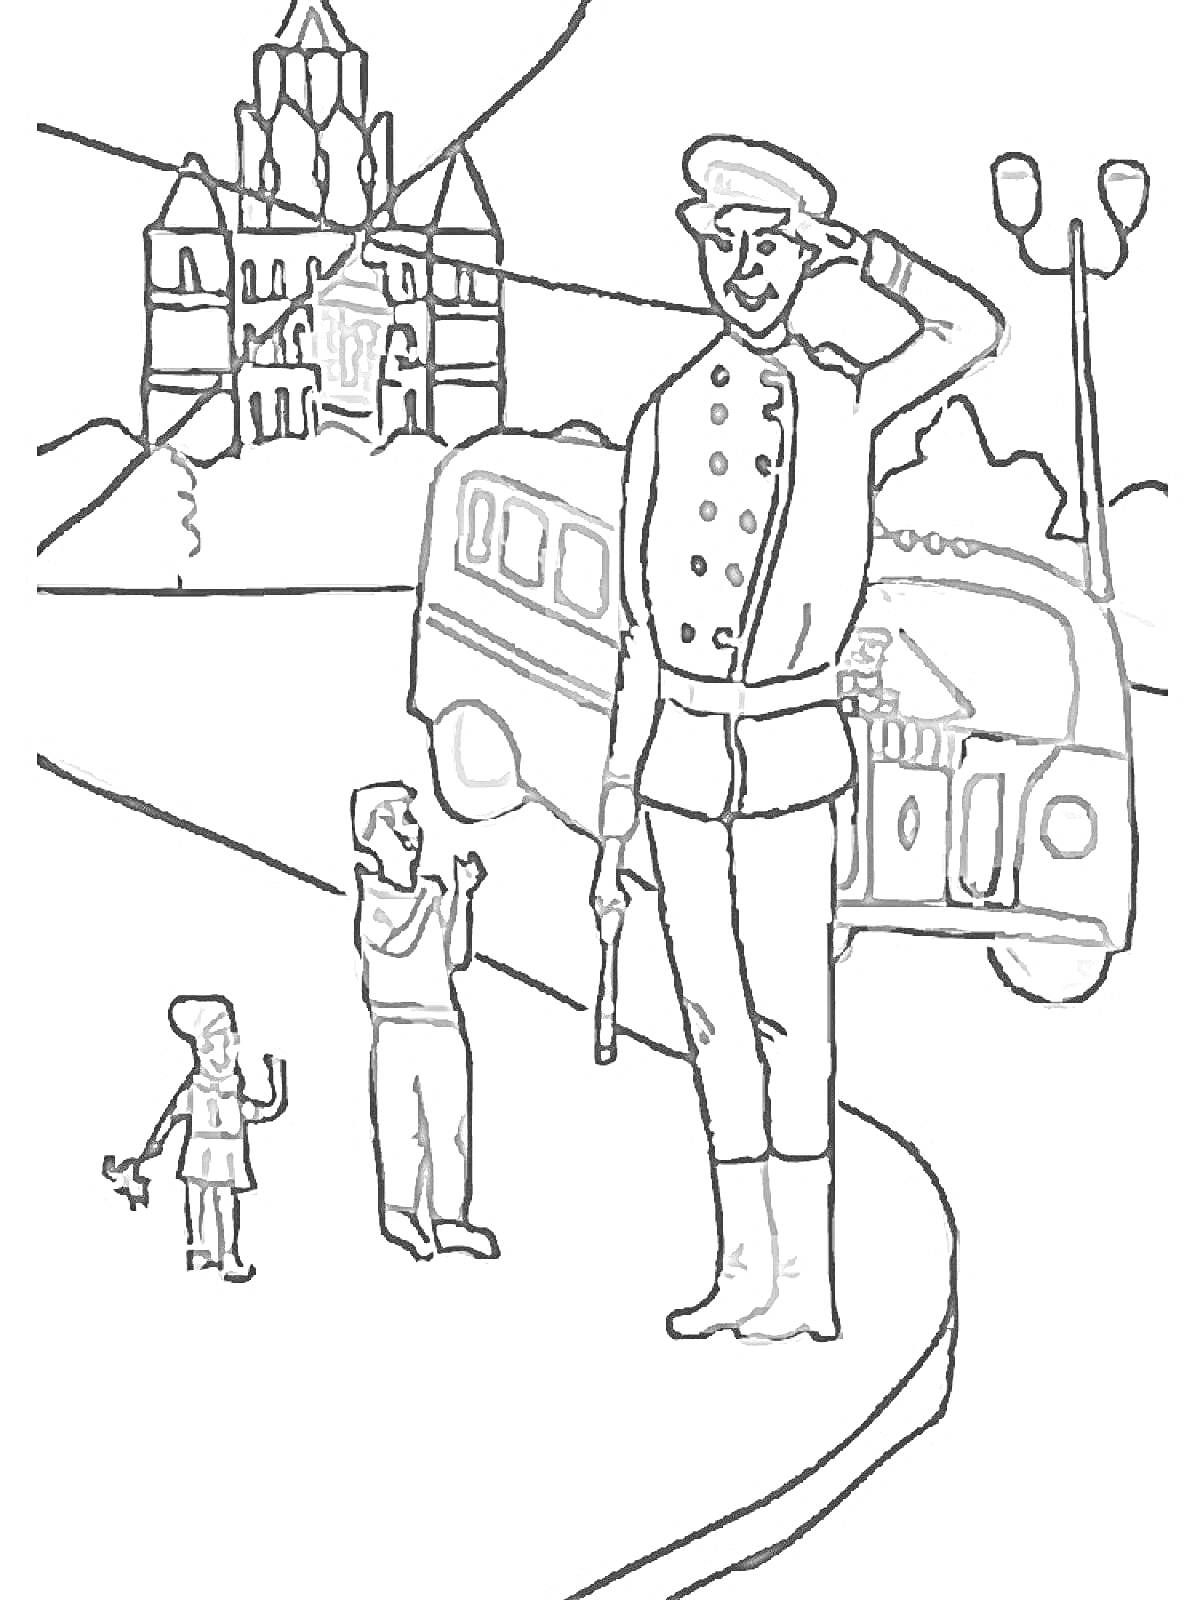 Раскраска Дядя Степа-салютует на дороге, дети рядом, автобус и здание на заднем плане